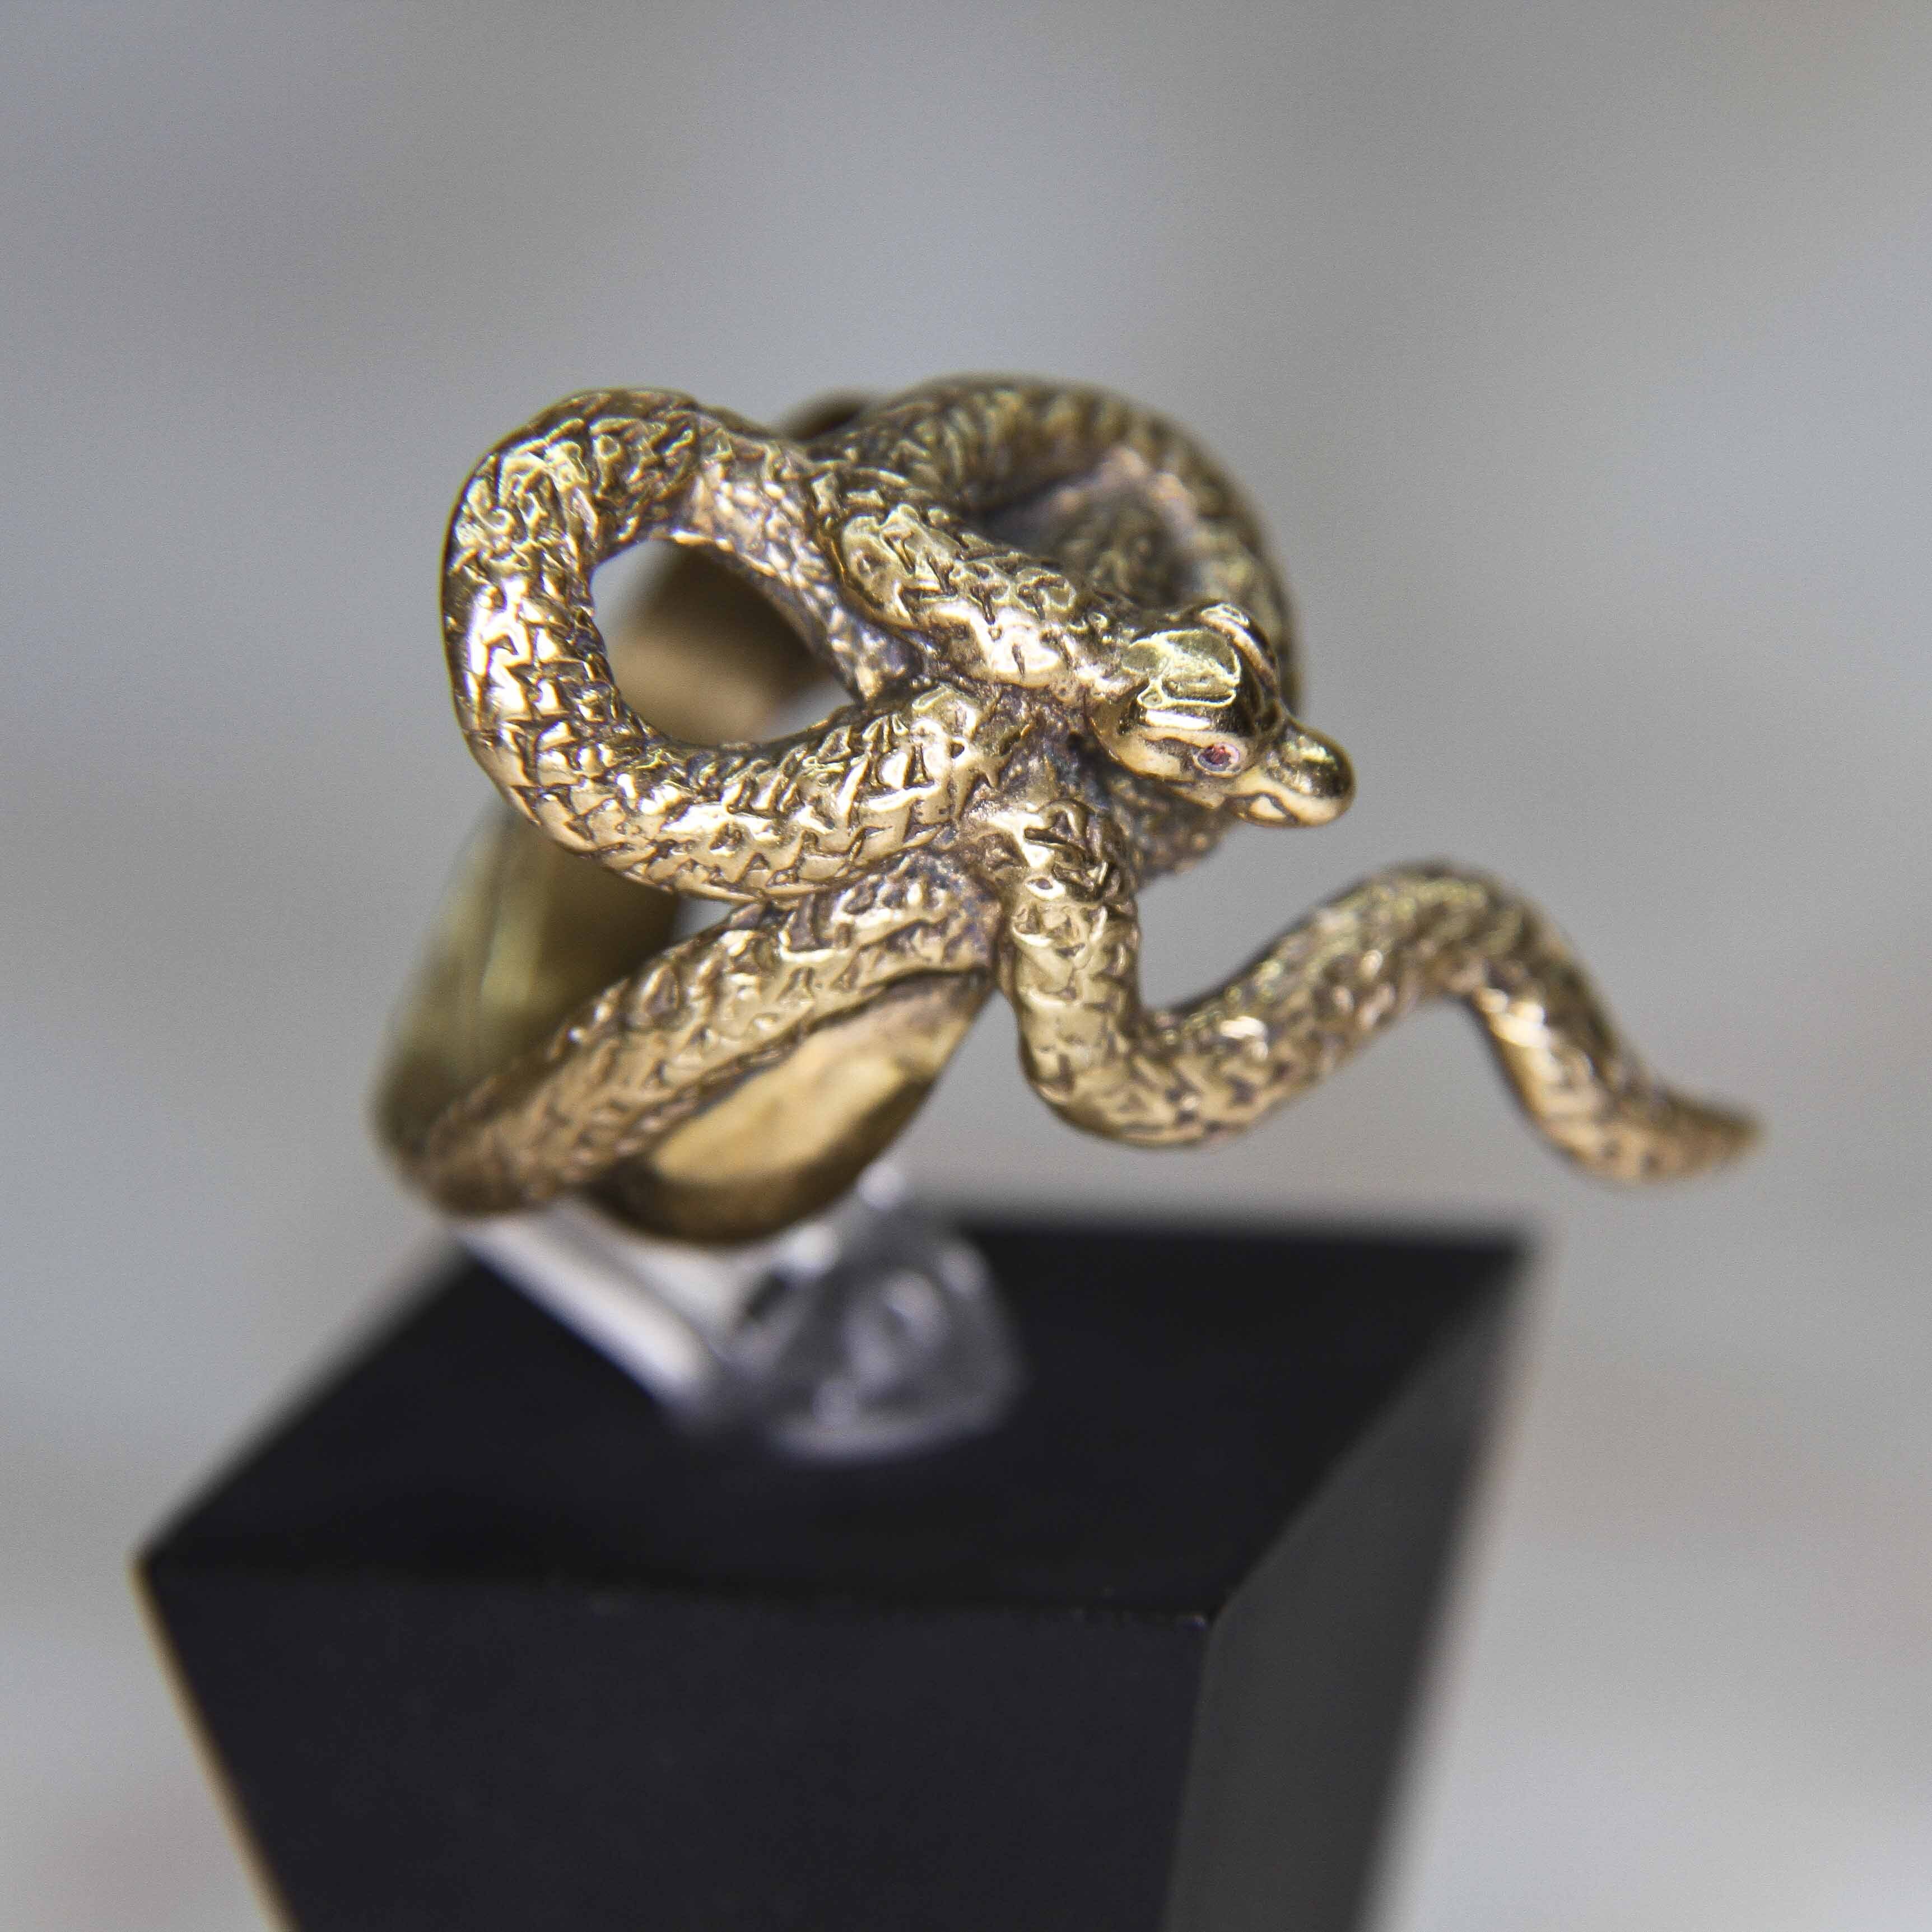 Кольцо змеи дарк соулс. Золотое кольцо жадного змея Dark Souls 3. Кольцо жадного змея Dark Souls. Кольцо золотого змея дс3. Dark Souls кольцо жадного змея серебряное.